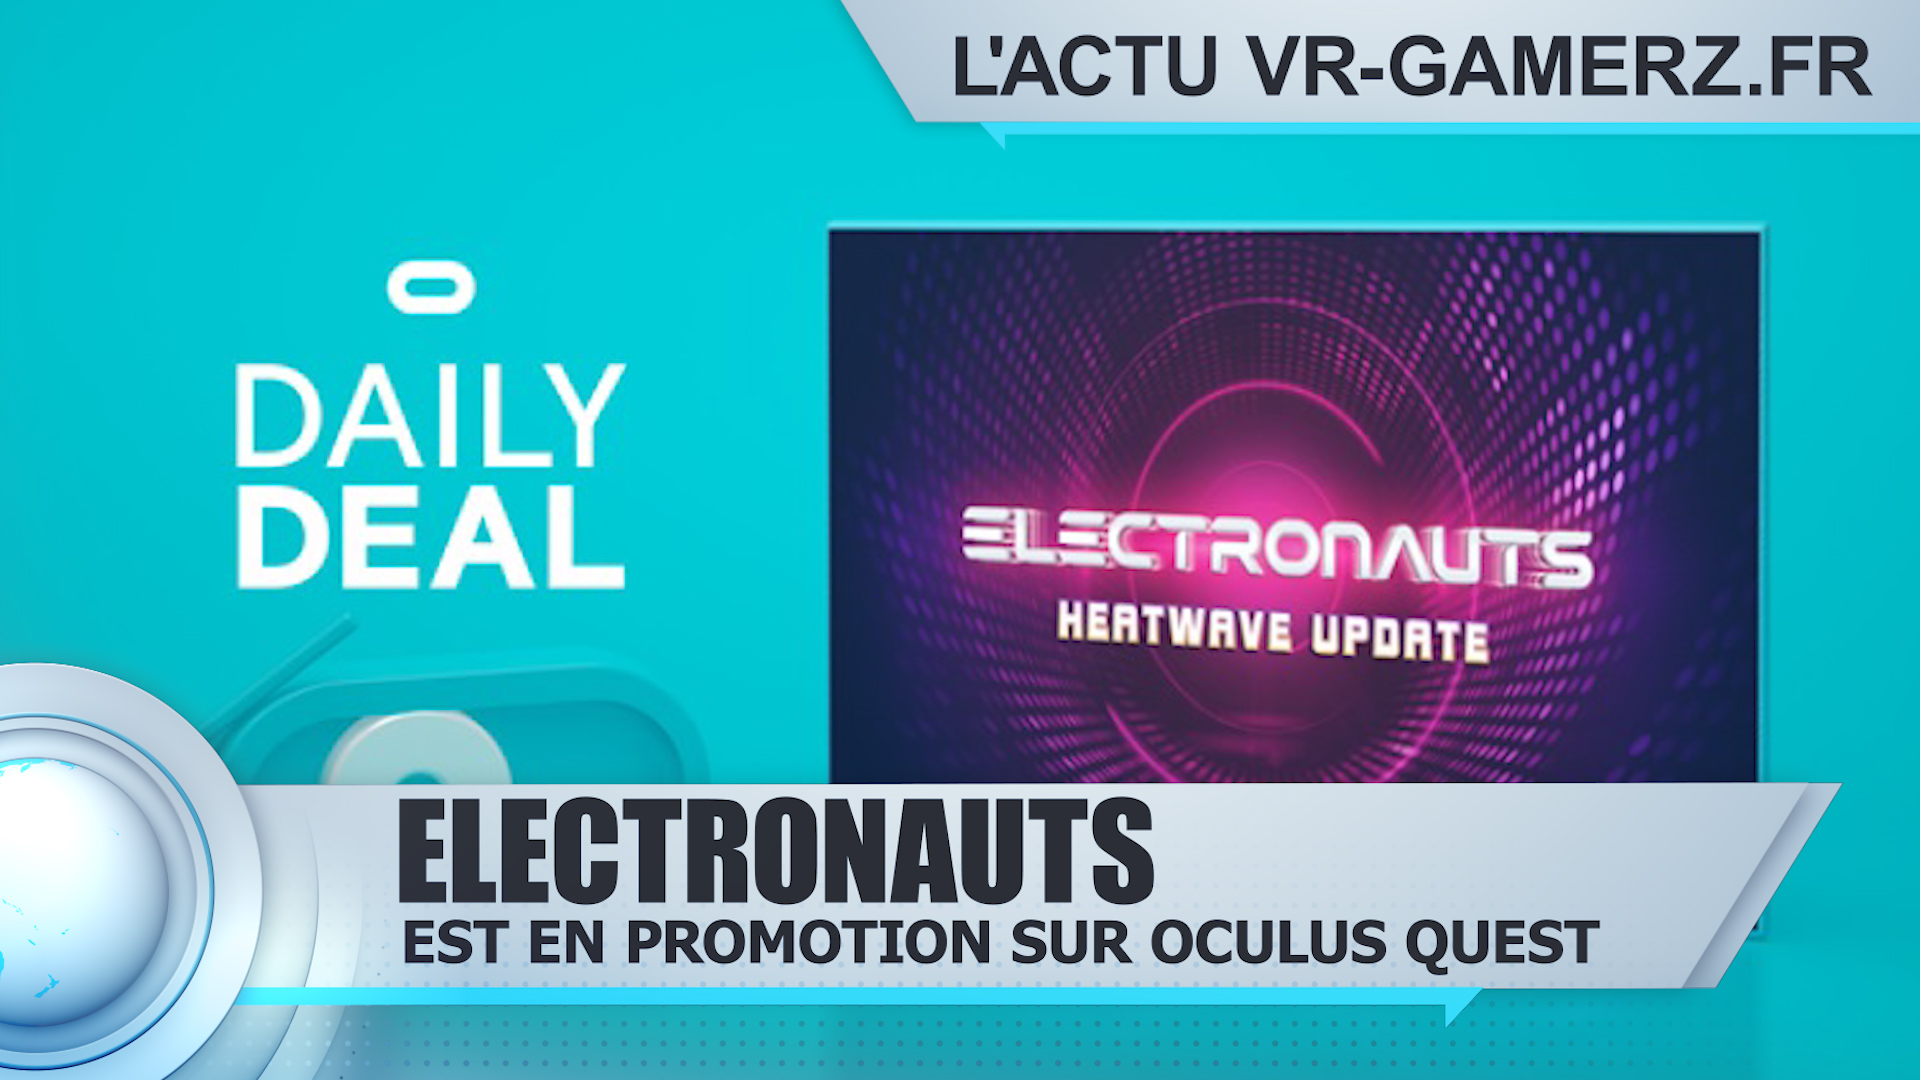 Electronauts est en promotion sur Oculus quest !